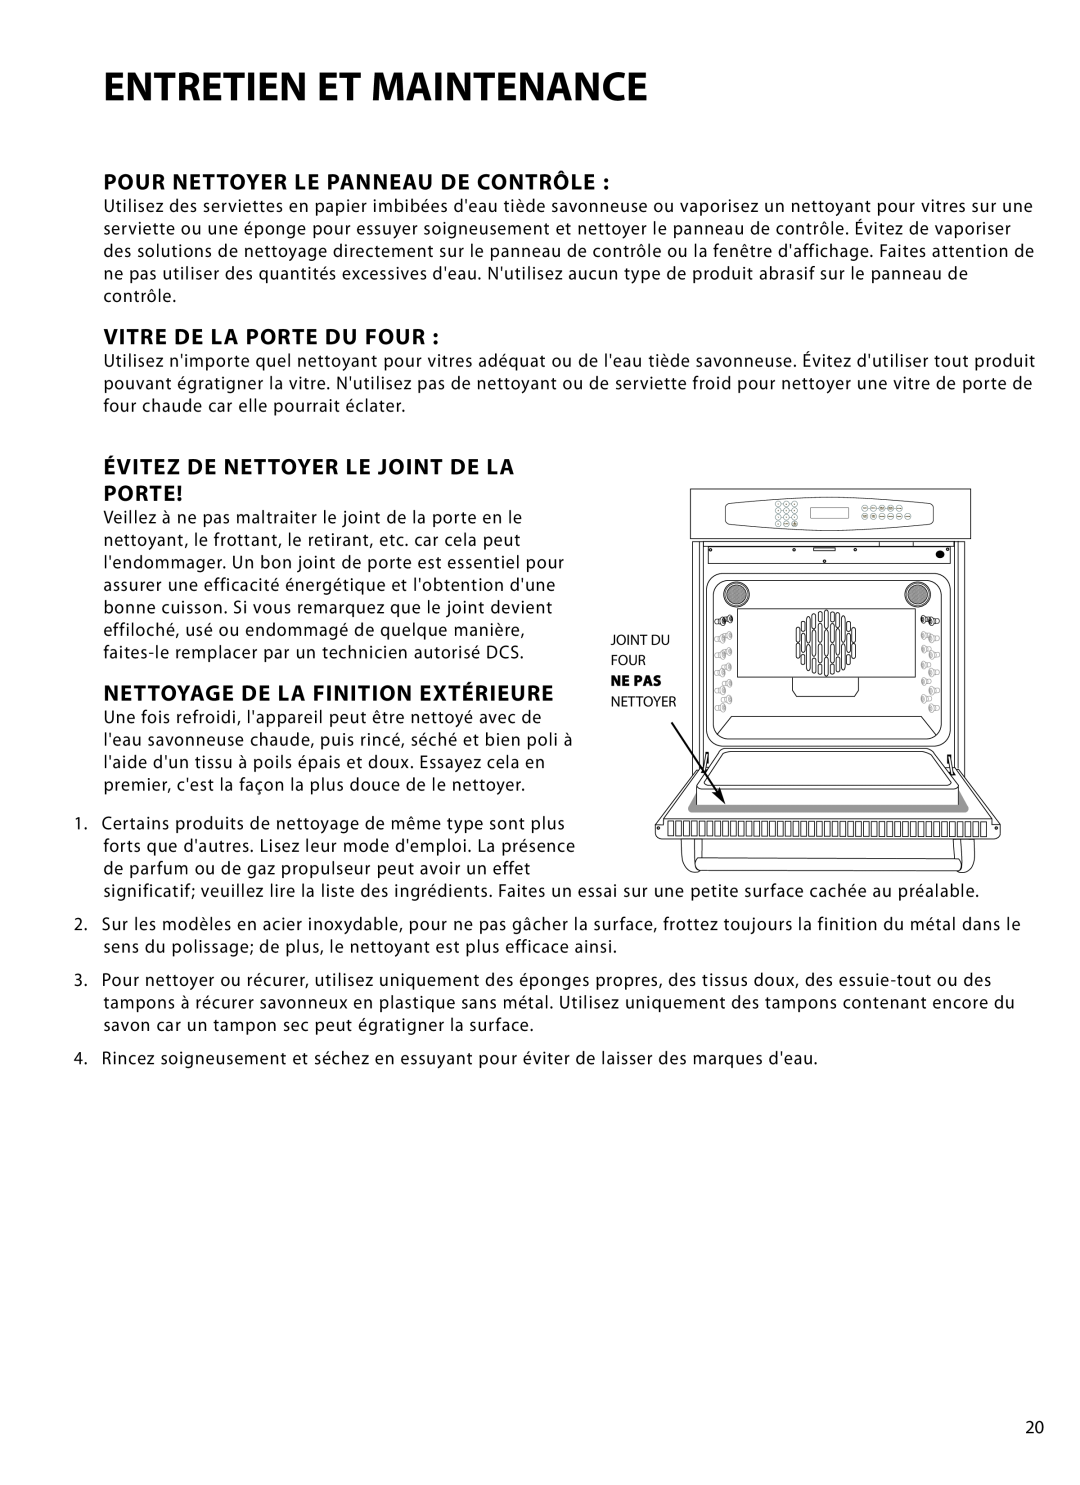 DCS WOT-130 manual Pour Nettoyer Le Panneau De Contrôle, Vitre De La Porte Du Four, Évitez De Nettoyer Le Joint De La Porte 